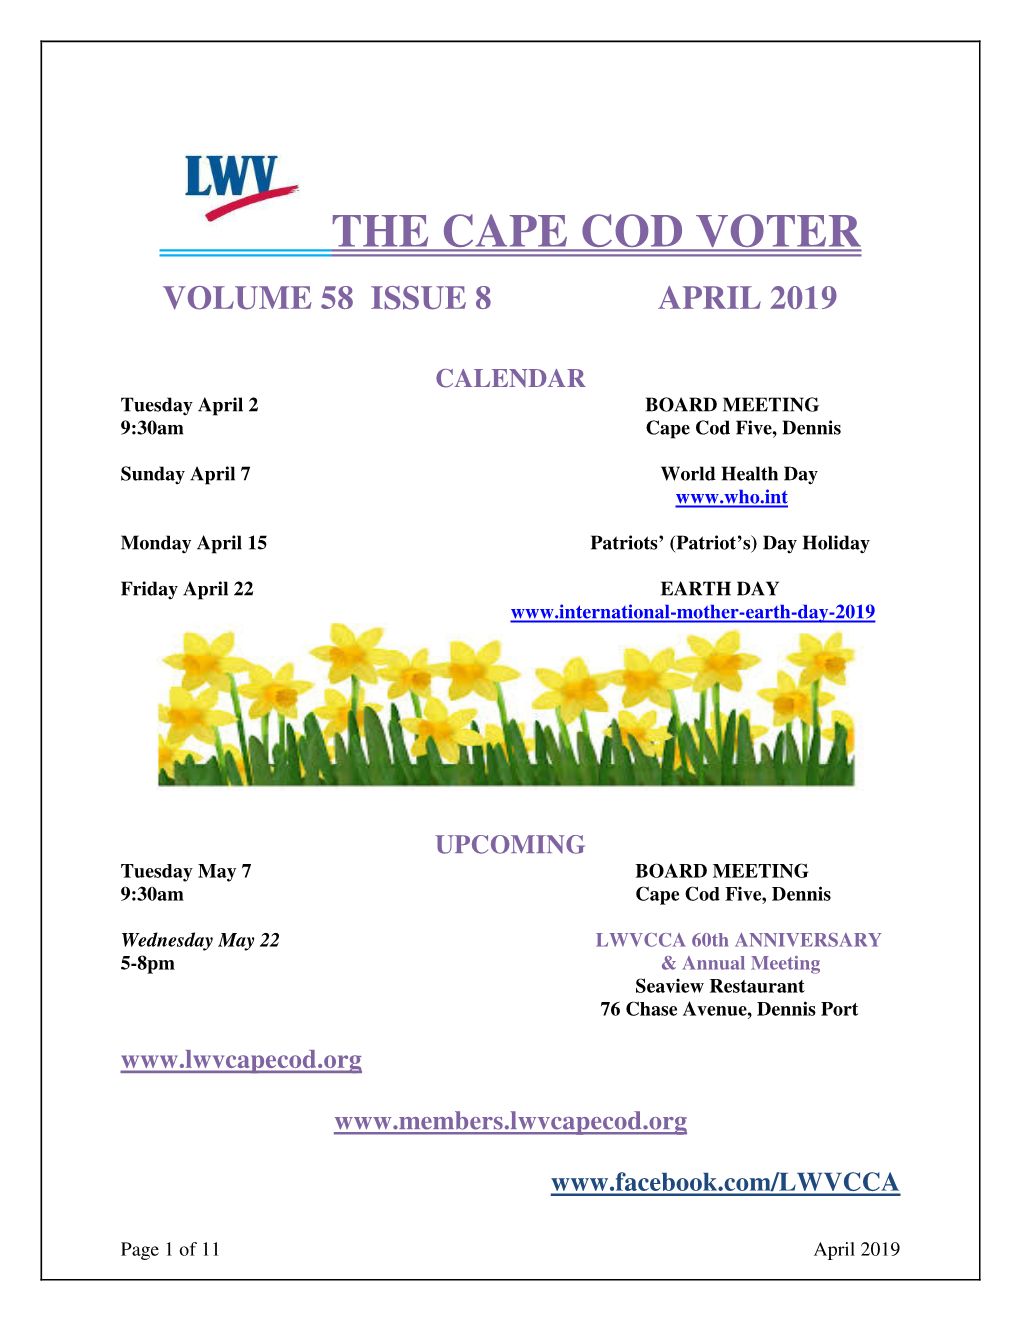 The Cape Cod Voter